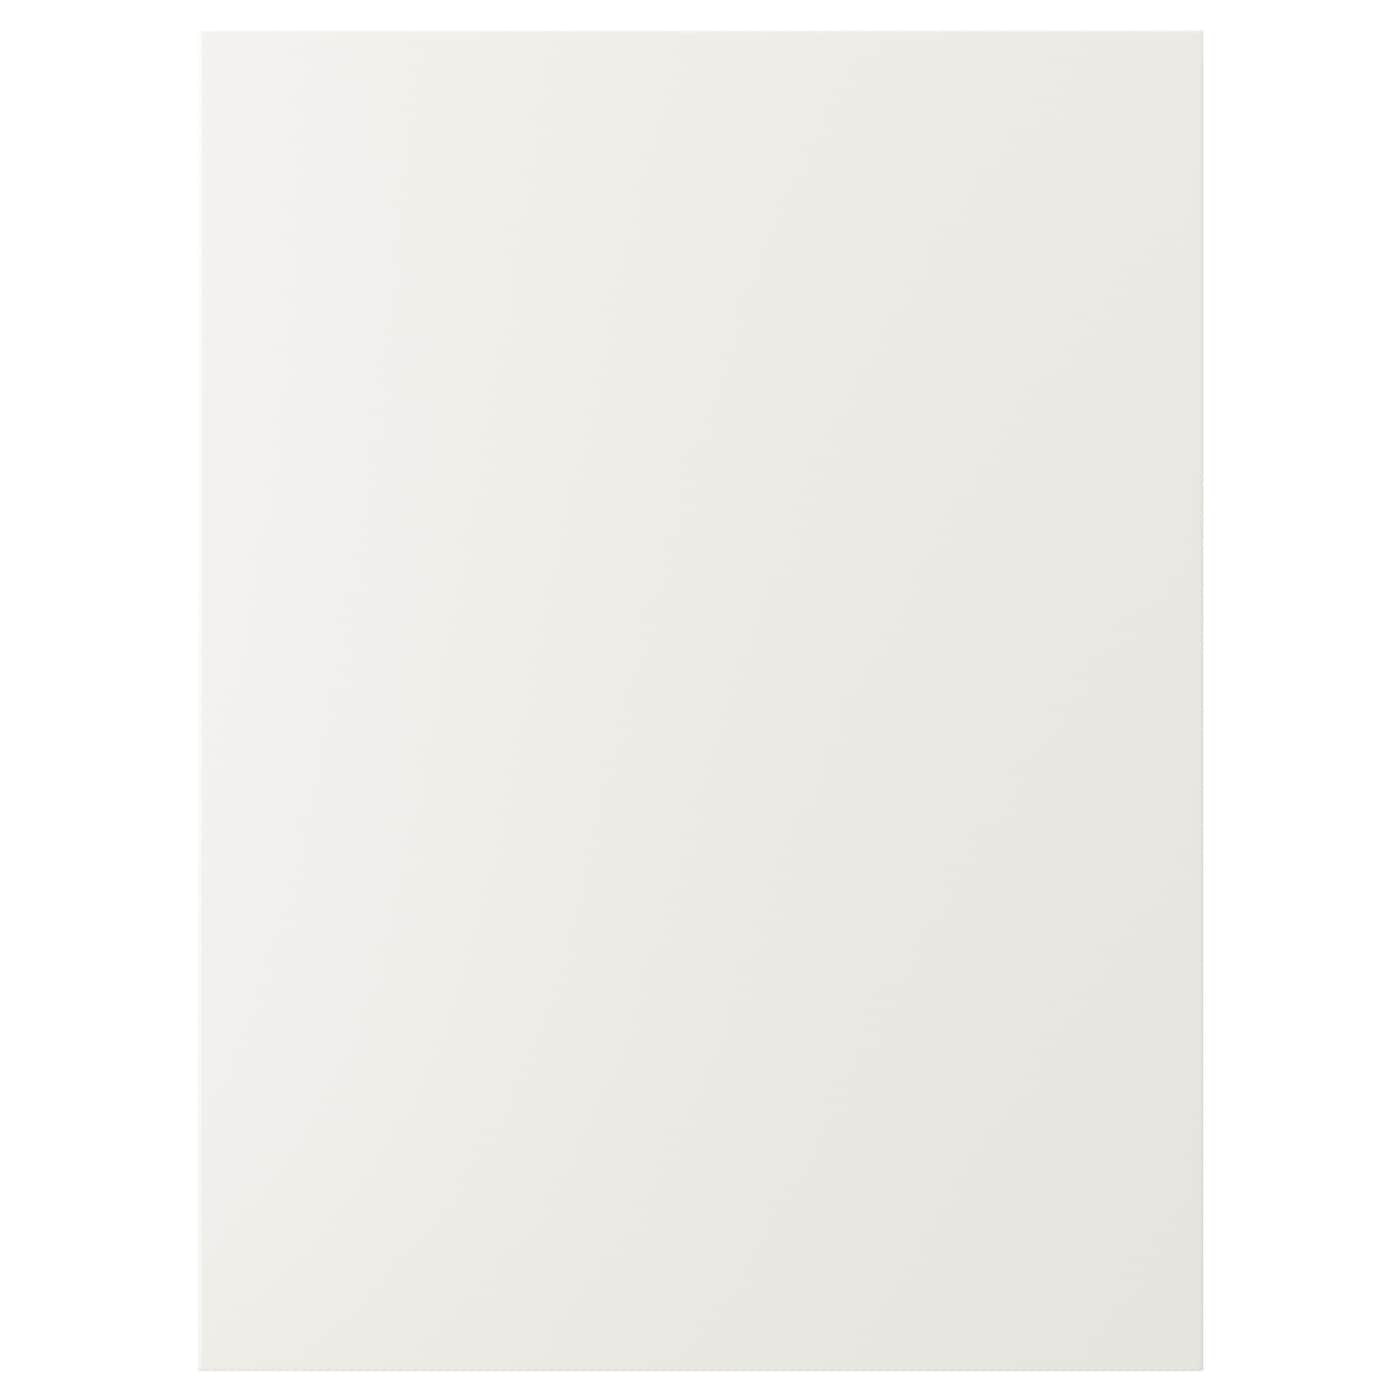 Дверца - IKEA VEDDINGE, 80х60 см, белый, ВЕДИНГЕ ИКЕА